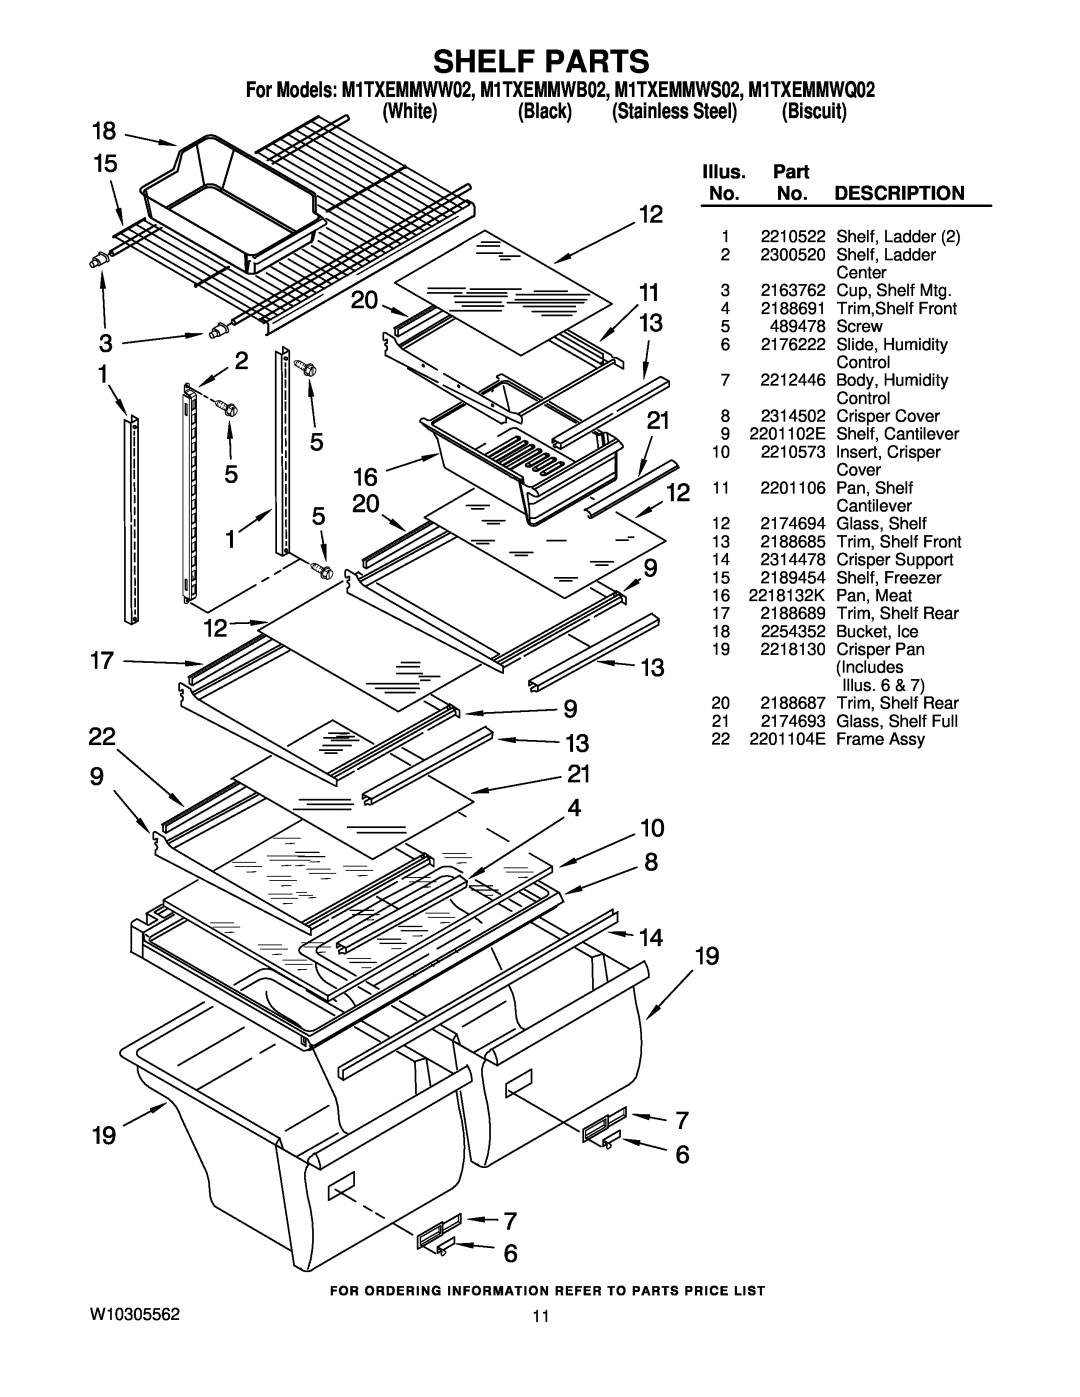 Maytag Shelf Parts, Biscuit, Description, For Models M1TXEMMWW02, M1TXEMMWB02, M1TXEMMWS02, M1TXEMMWQ02, White, Black 